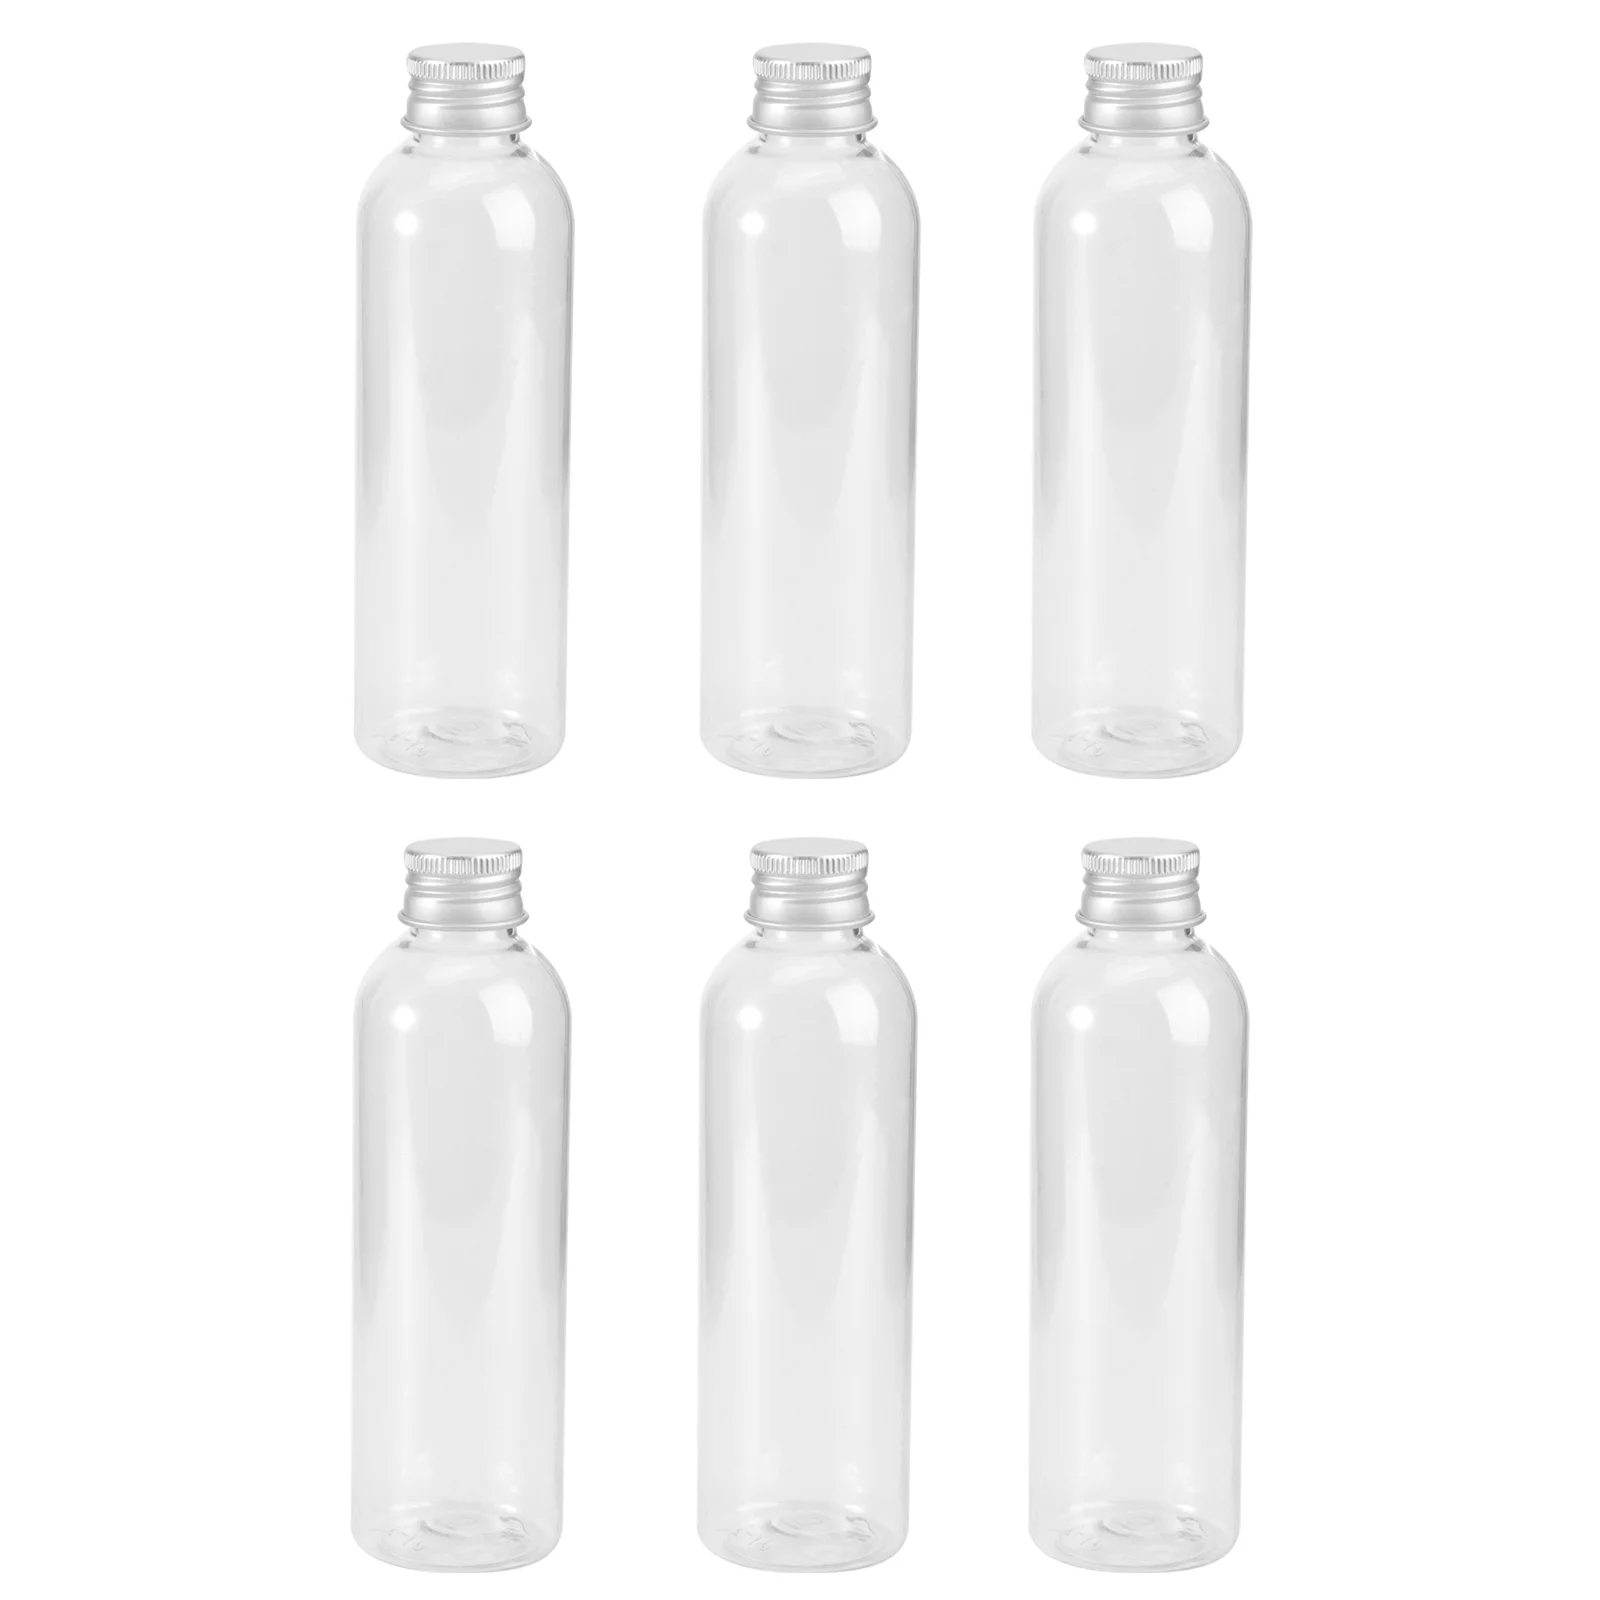 

6PCS 200ml Reusable Smoothie Bottles Bottles With Caps Body Lotion Bottle Bottle Dispenser